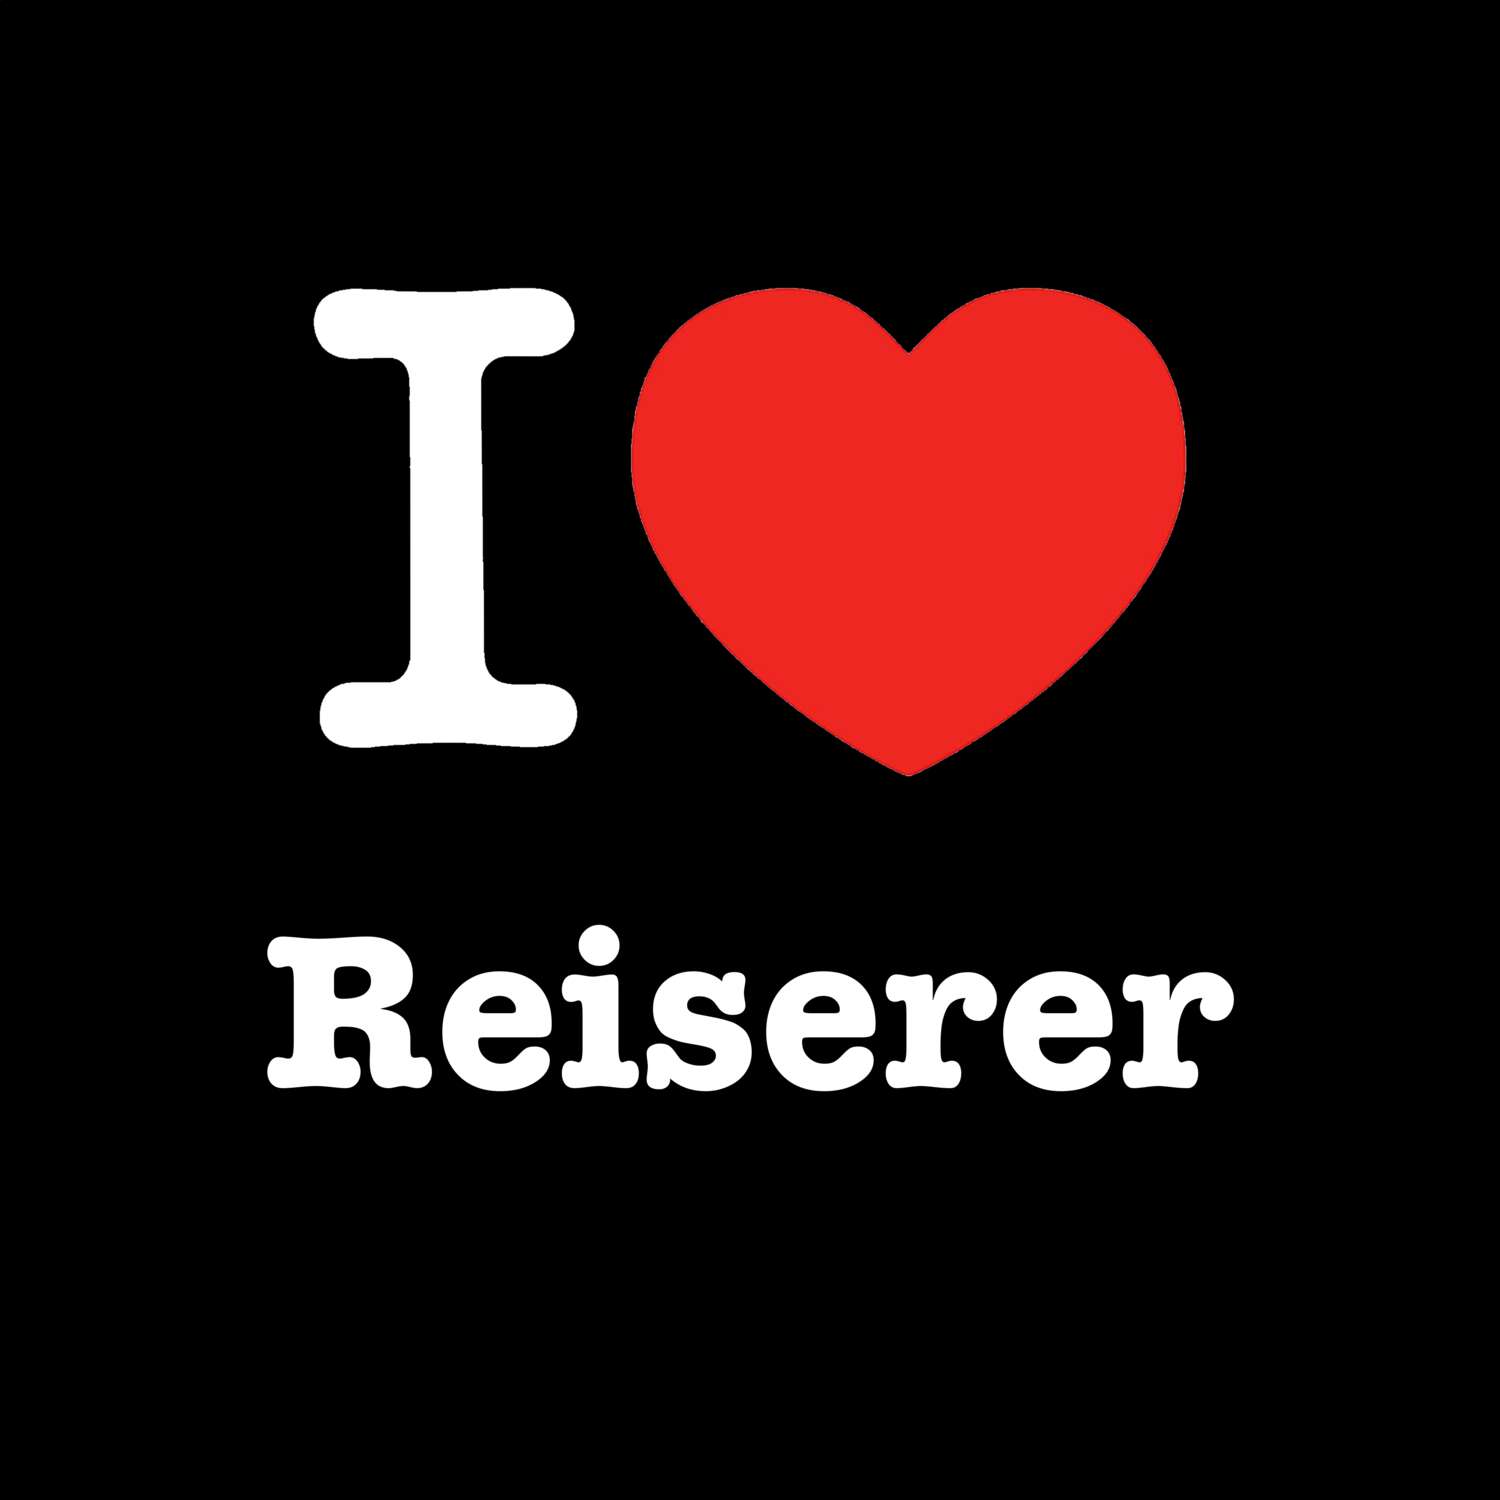 Reiserer T-Shirt »I love«